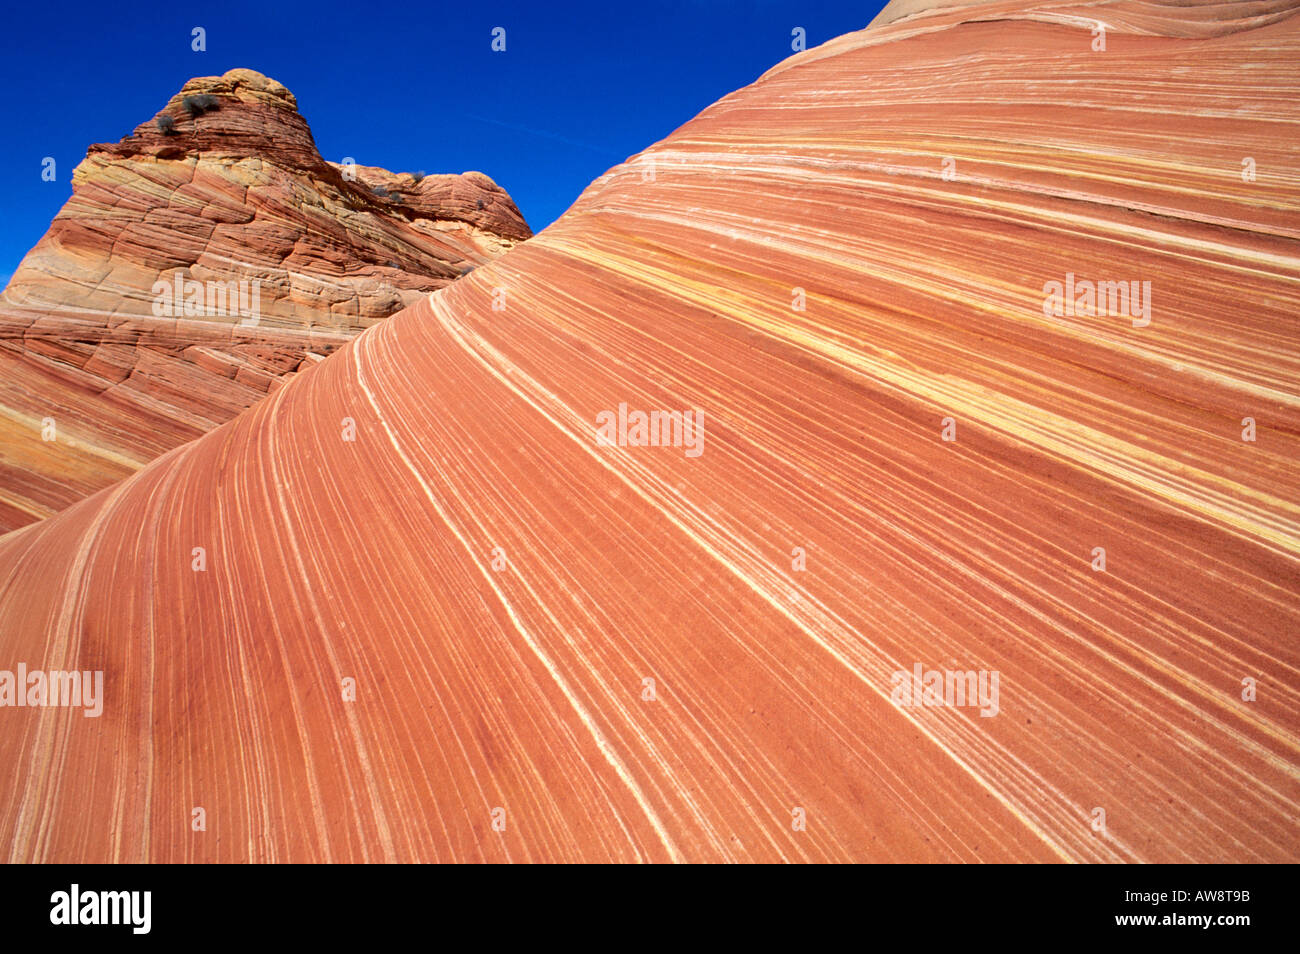 Formation de grès tourbillonnant connu comme la vague Coyote Buttes Paria Canyon désert Arizona Vermilion Cliffs Banque D'Images